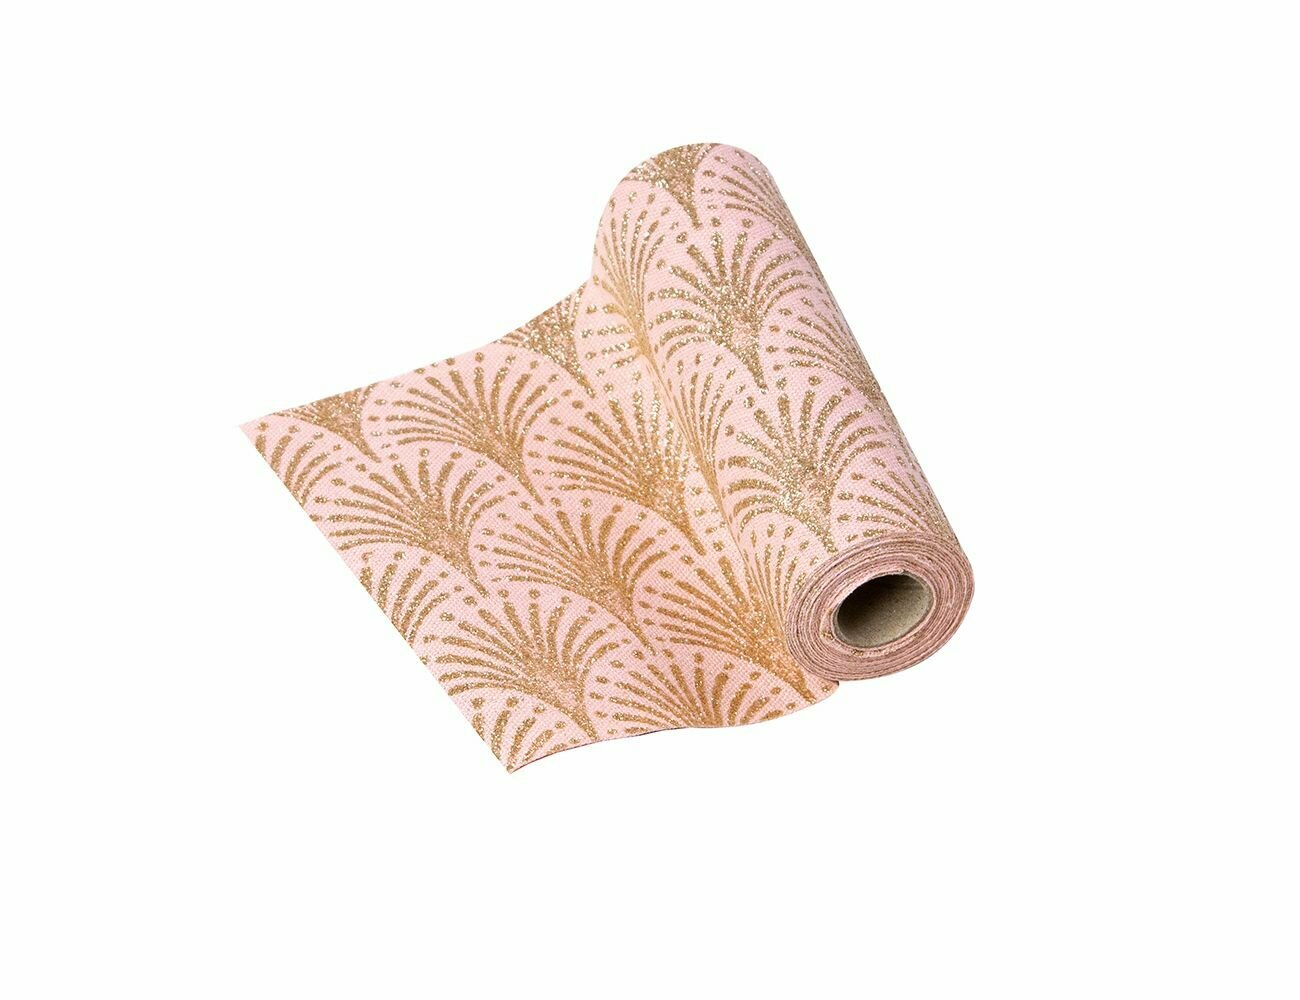 Лента для декорирования романтичная экзотика - пальмы, розовая, 14х270 см, Koopman International